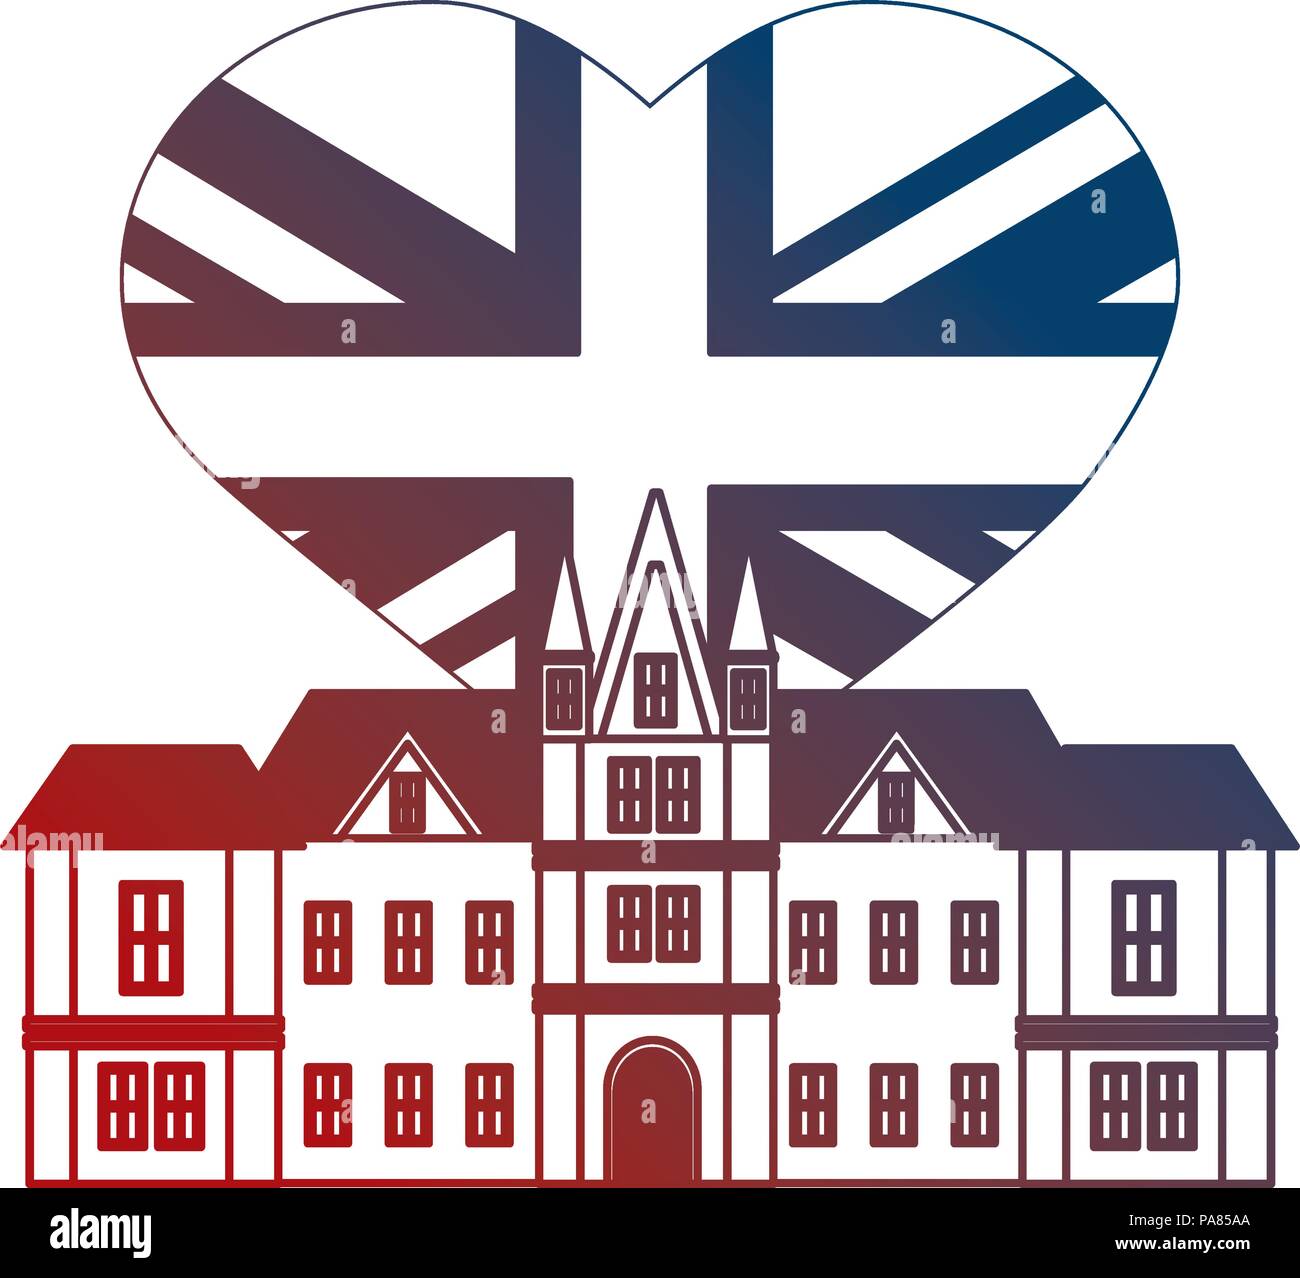 Le château d'édimbourg Royaume-Uni drapeau coeur neon illustration vectorielle Illustration de Vecteur